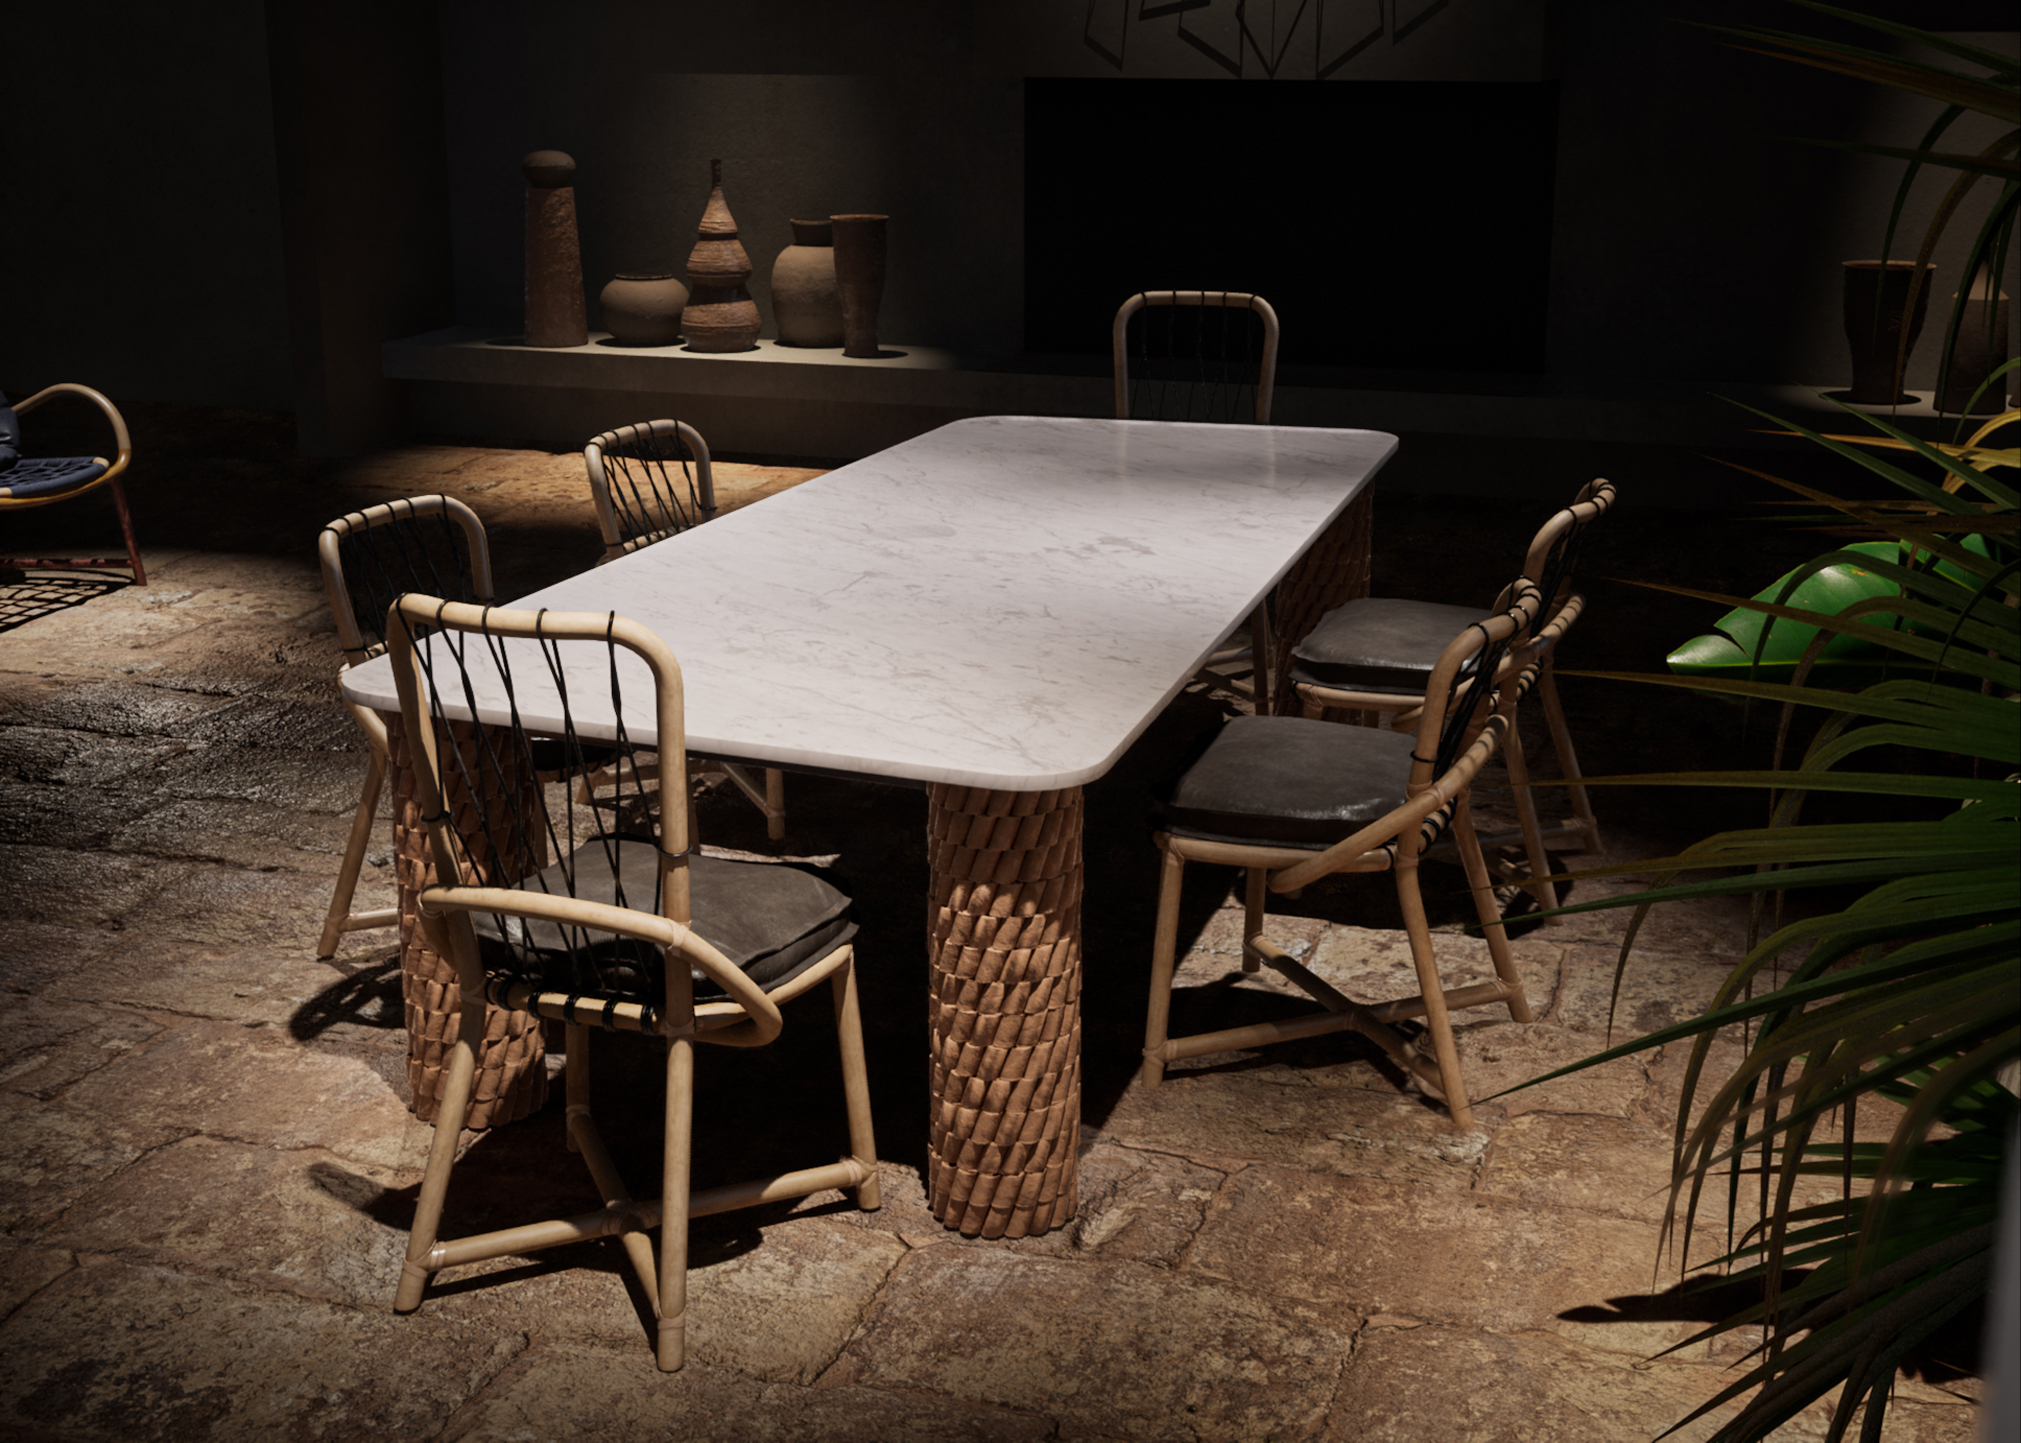 Rendu 3D d'objet d'une table à manger entourée de chaises avec des carcasses tissées dans l'ambiance de lumière faible